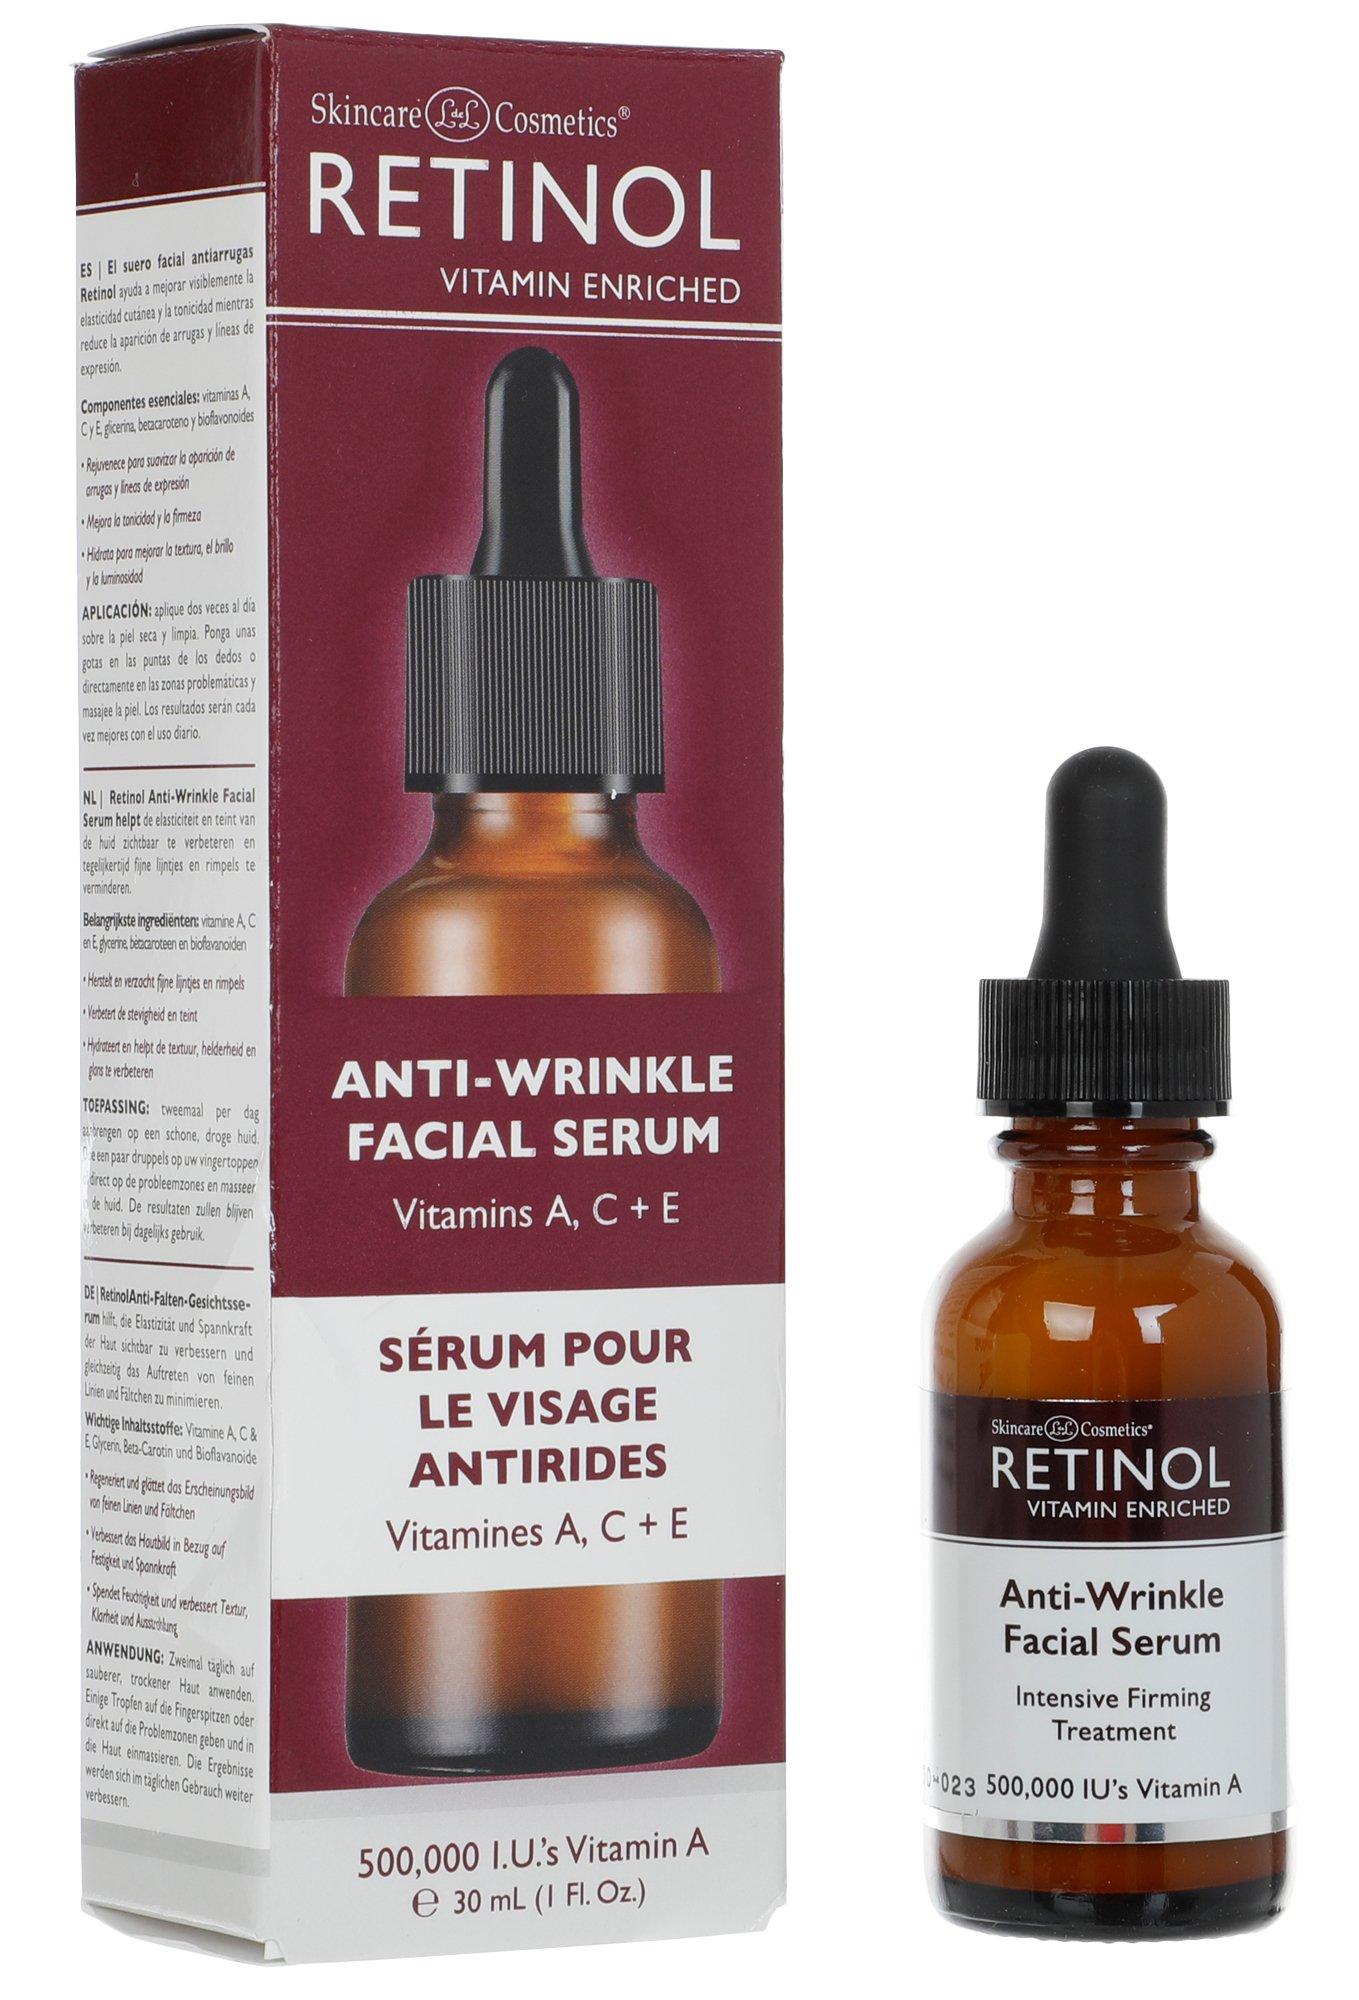 Anti-Wrinkle Facial Serum